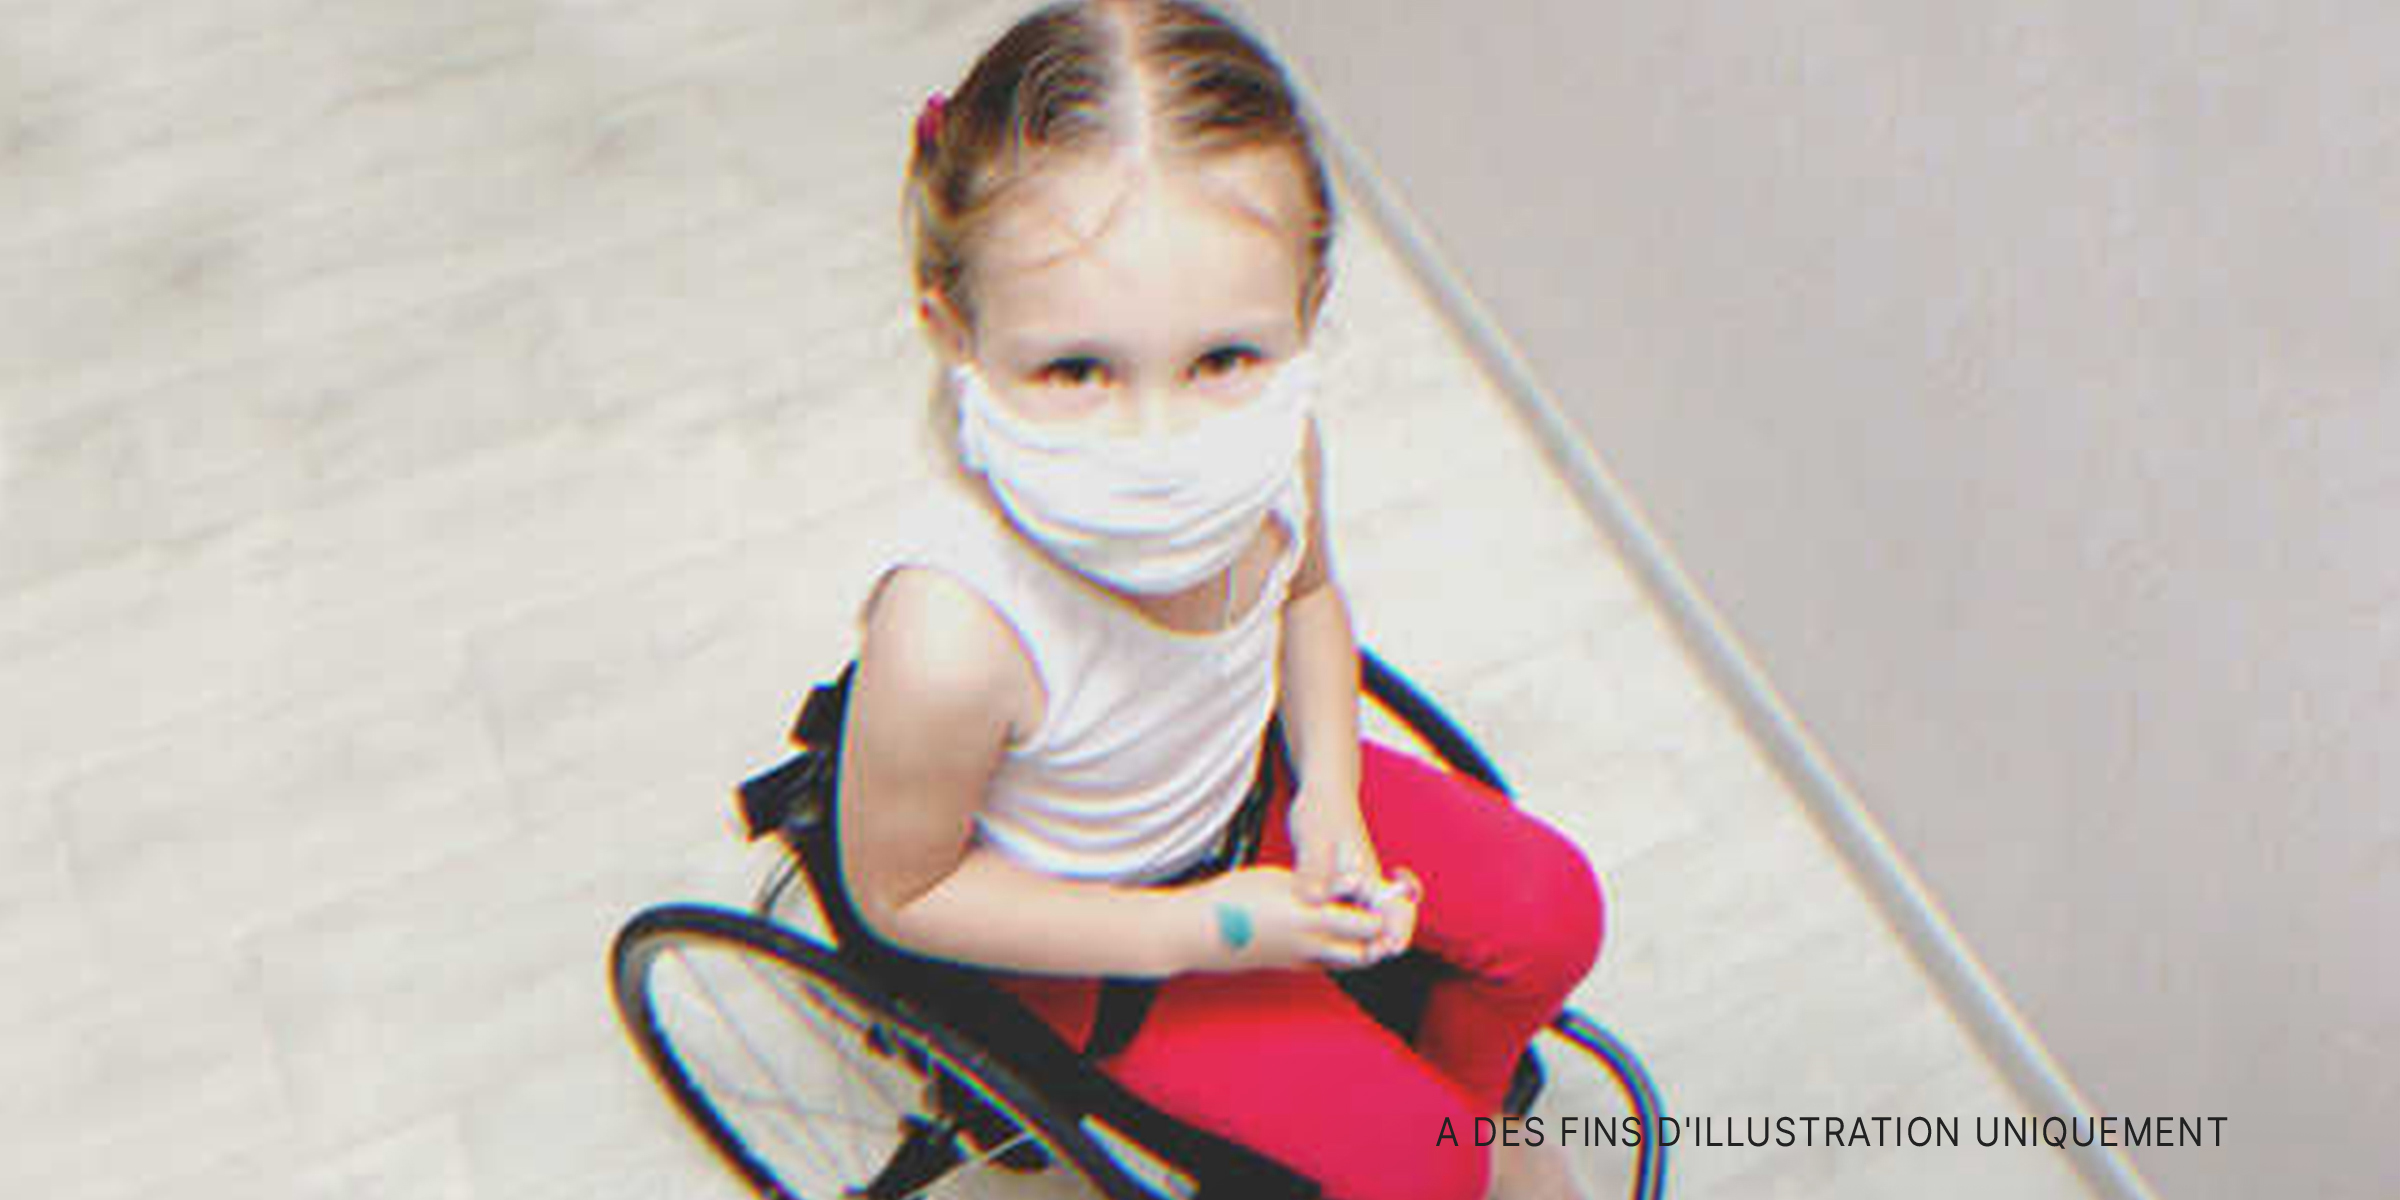 Une petite fille en fauteuil roulant | Source : Shutterstock